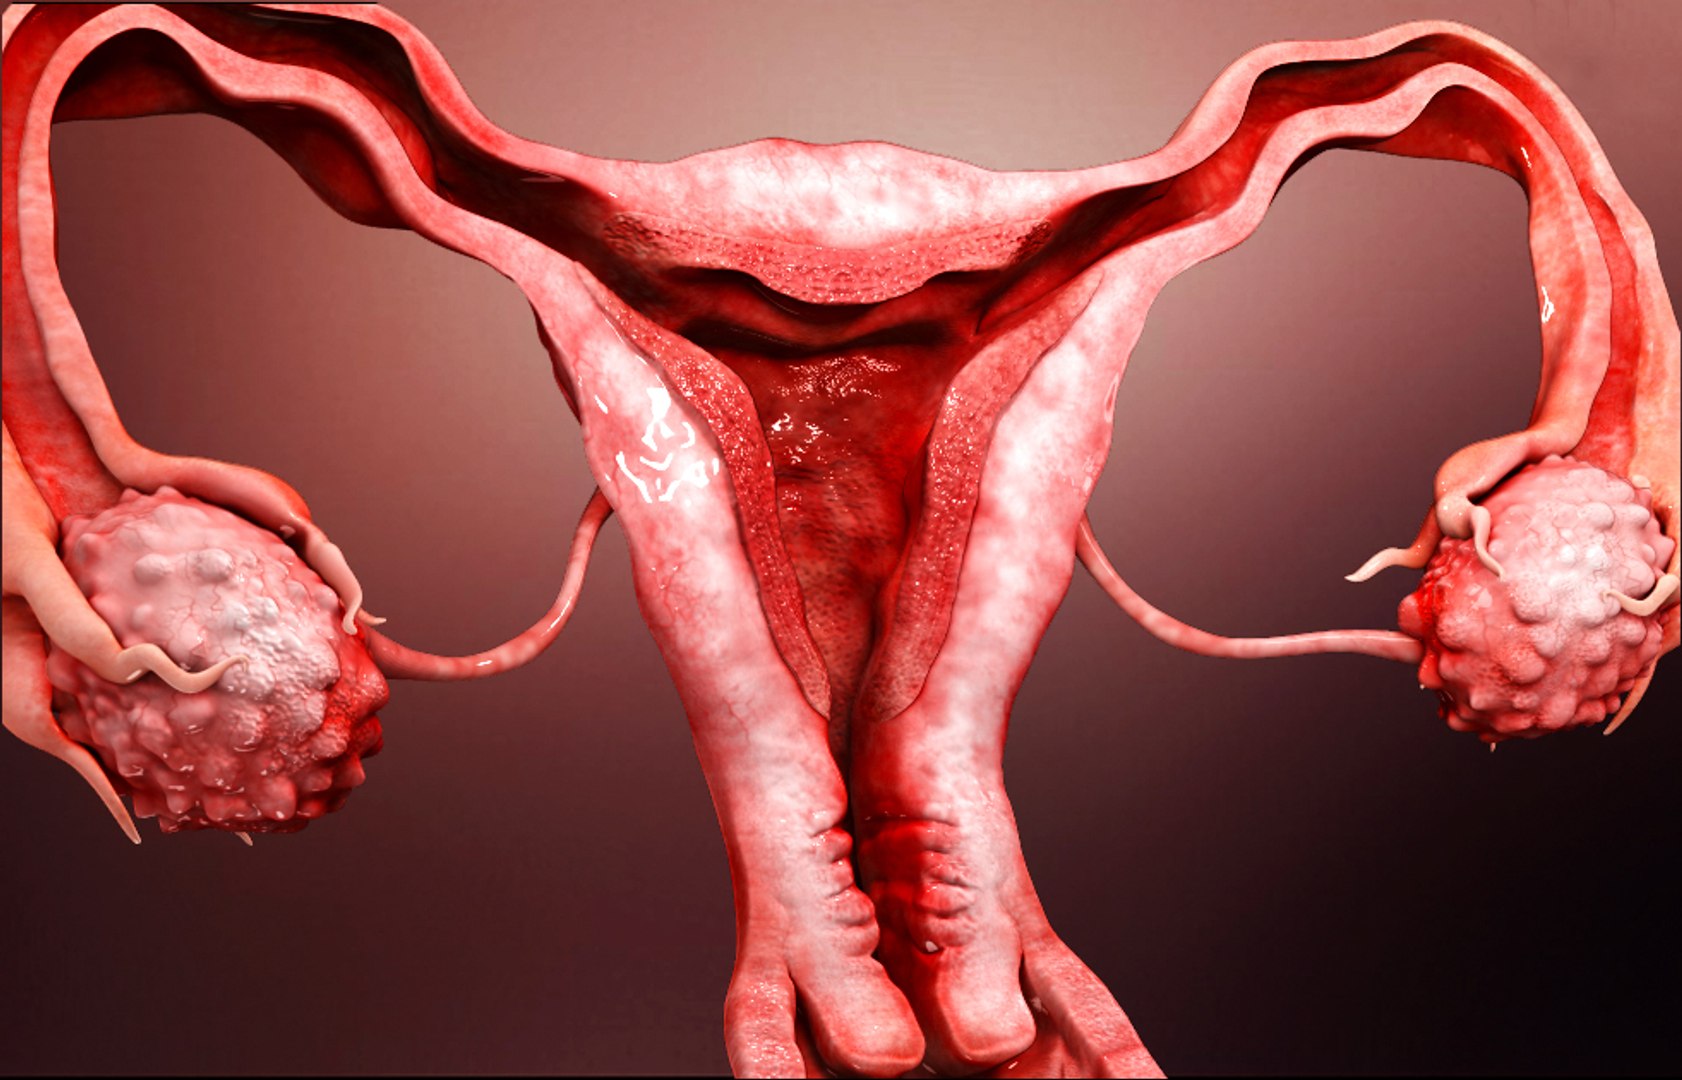 Репродуктивная женская половая система. Женские репродуктивные органы. Репродуктивные органы человека. Репродуктивные органы женщины фото. Женская репродуктивная система фото.